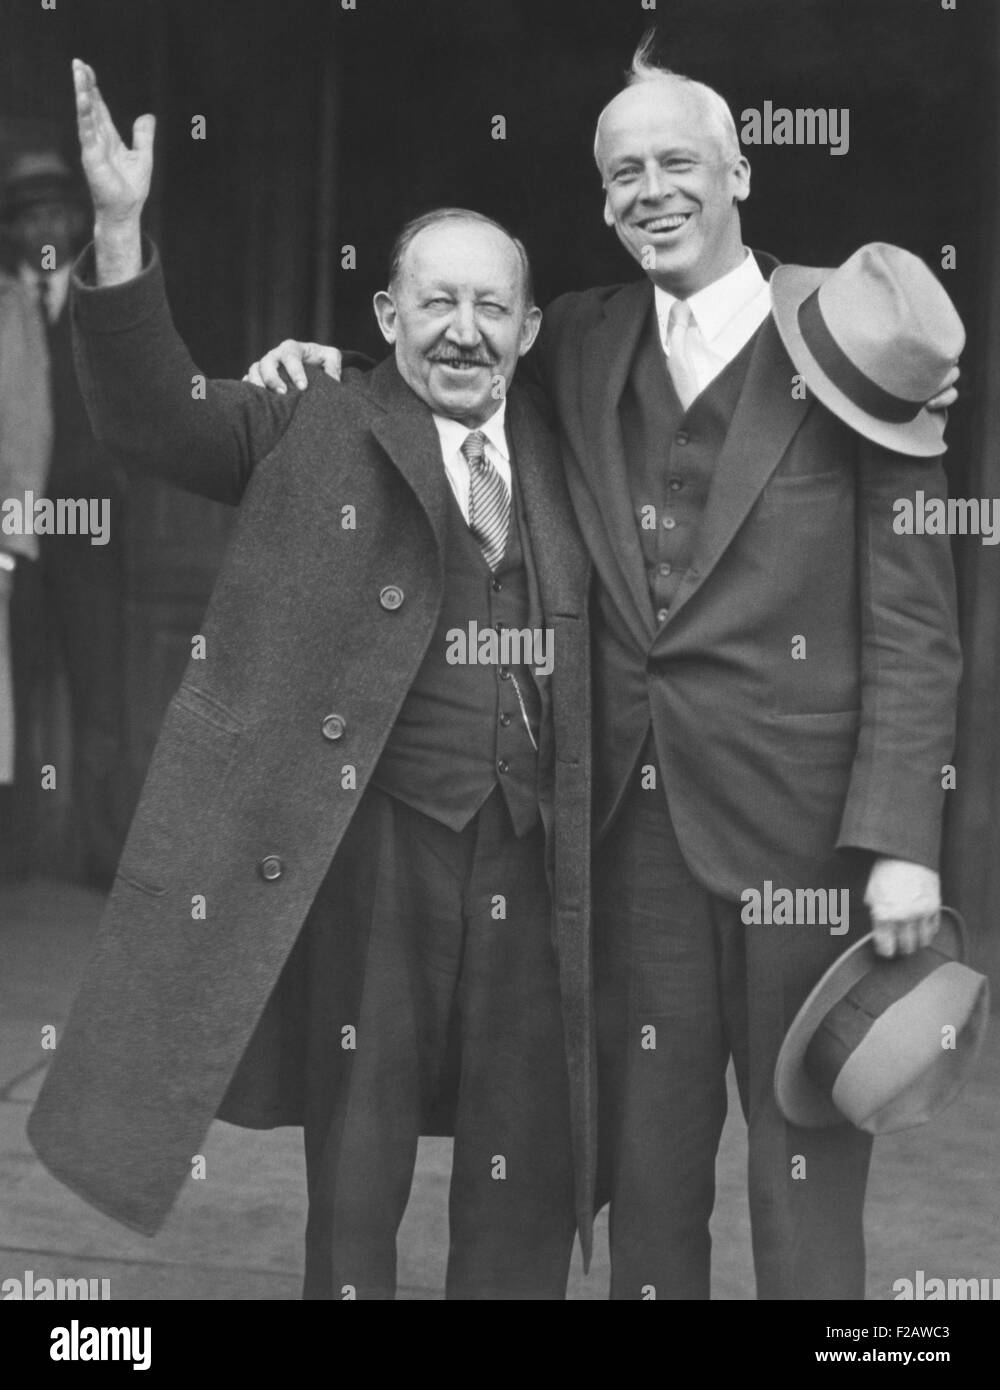 1932 candidatos nacional socialista. Norman Thomas (derecha) se postuló para Presidente con James Maurer, Alcalde de Reading, Pensilvania, su Vicepresidencia. (CSU 2015 11 1417) Foto de stock